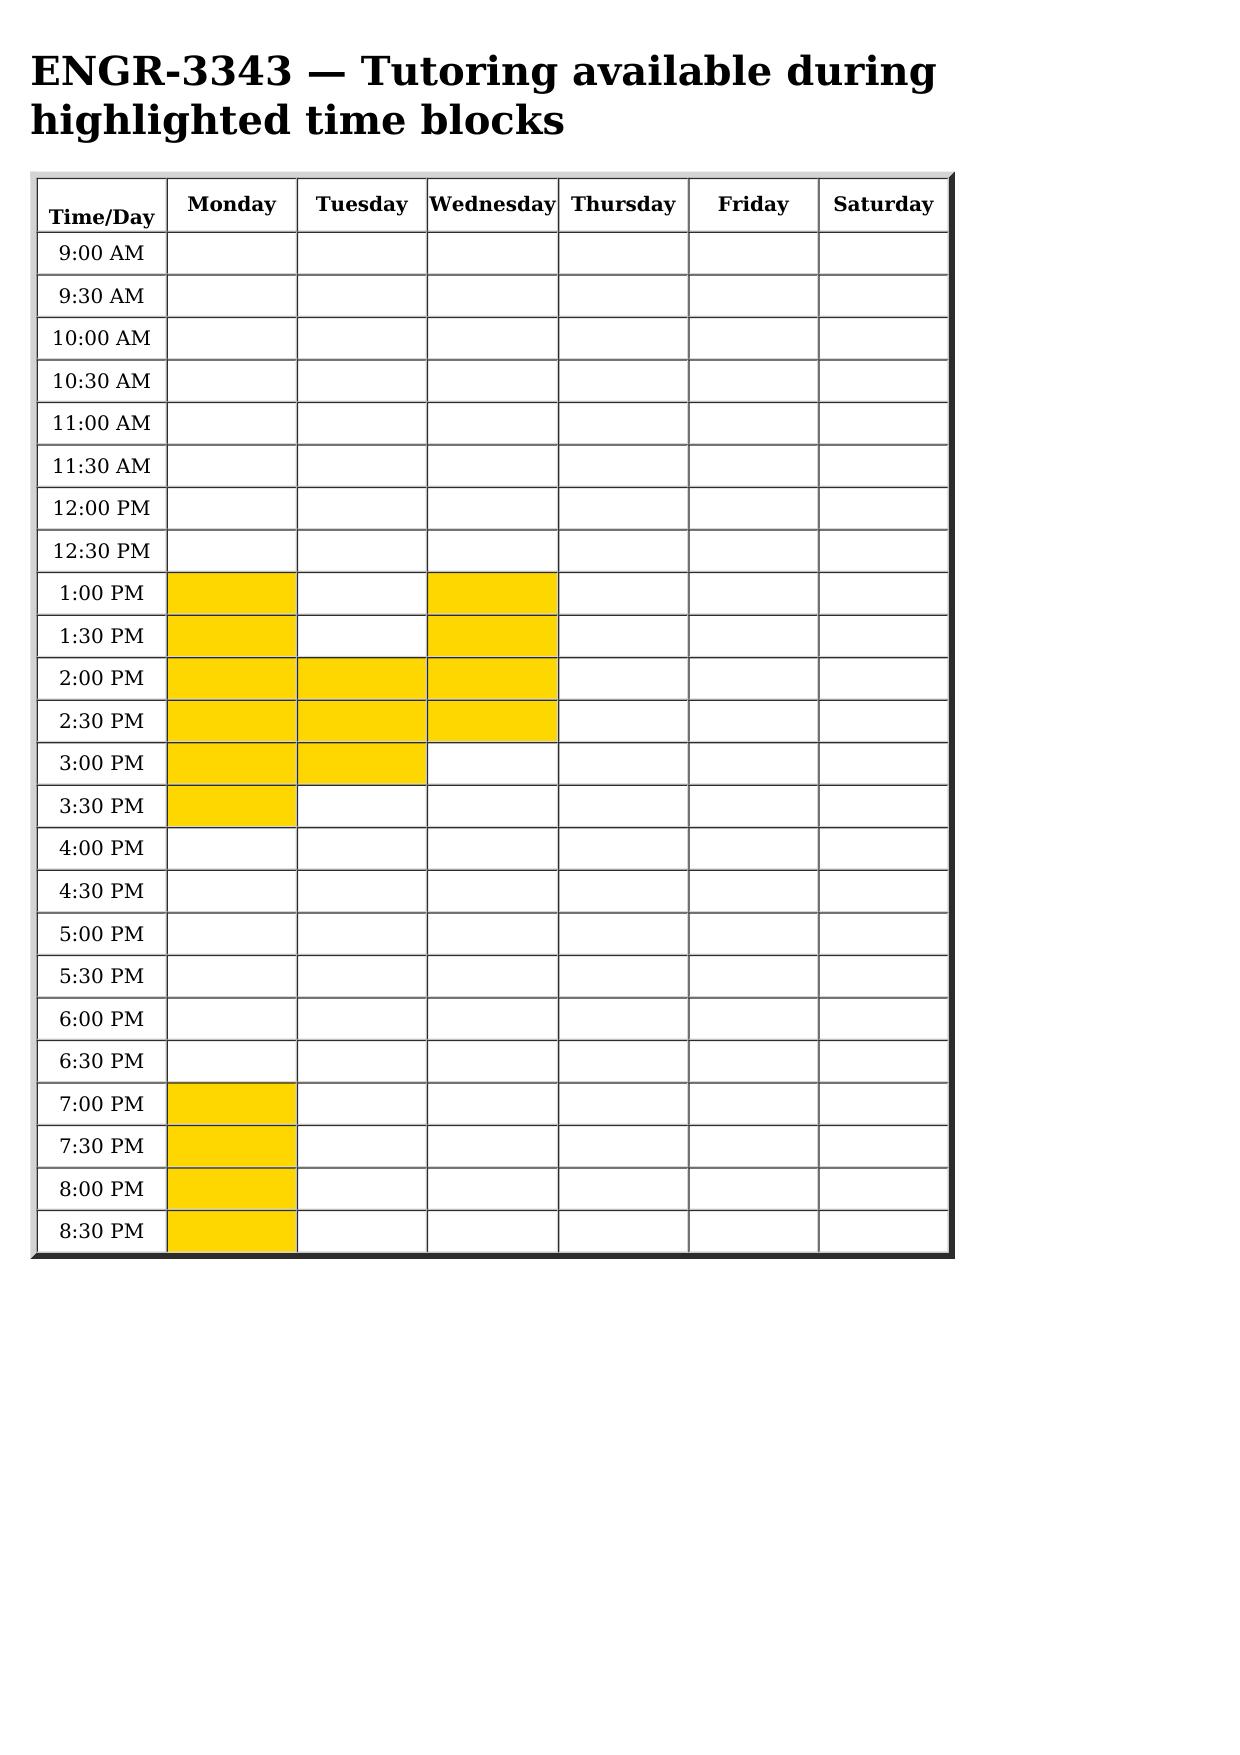 engr 3343 schedule